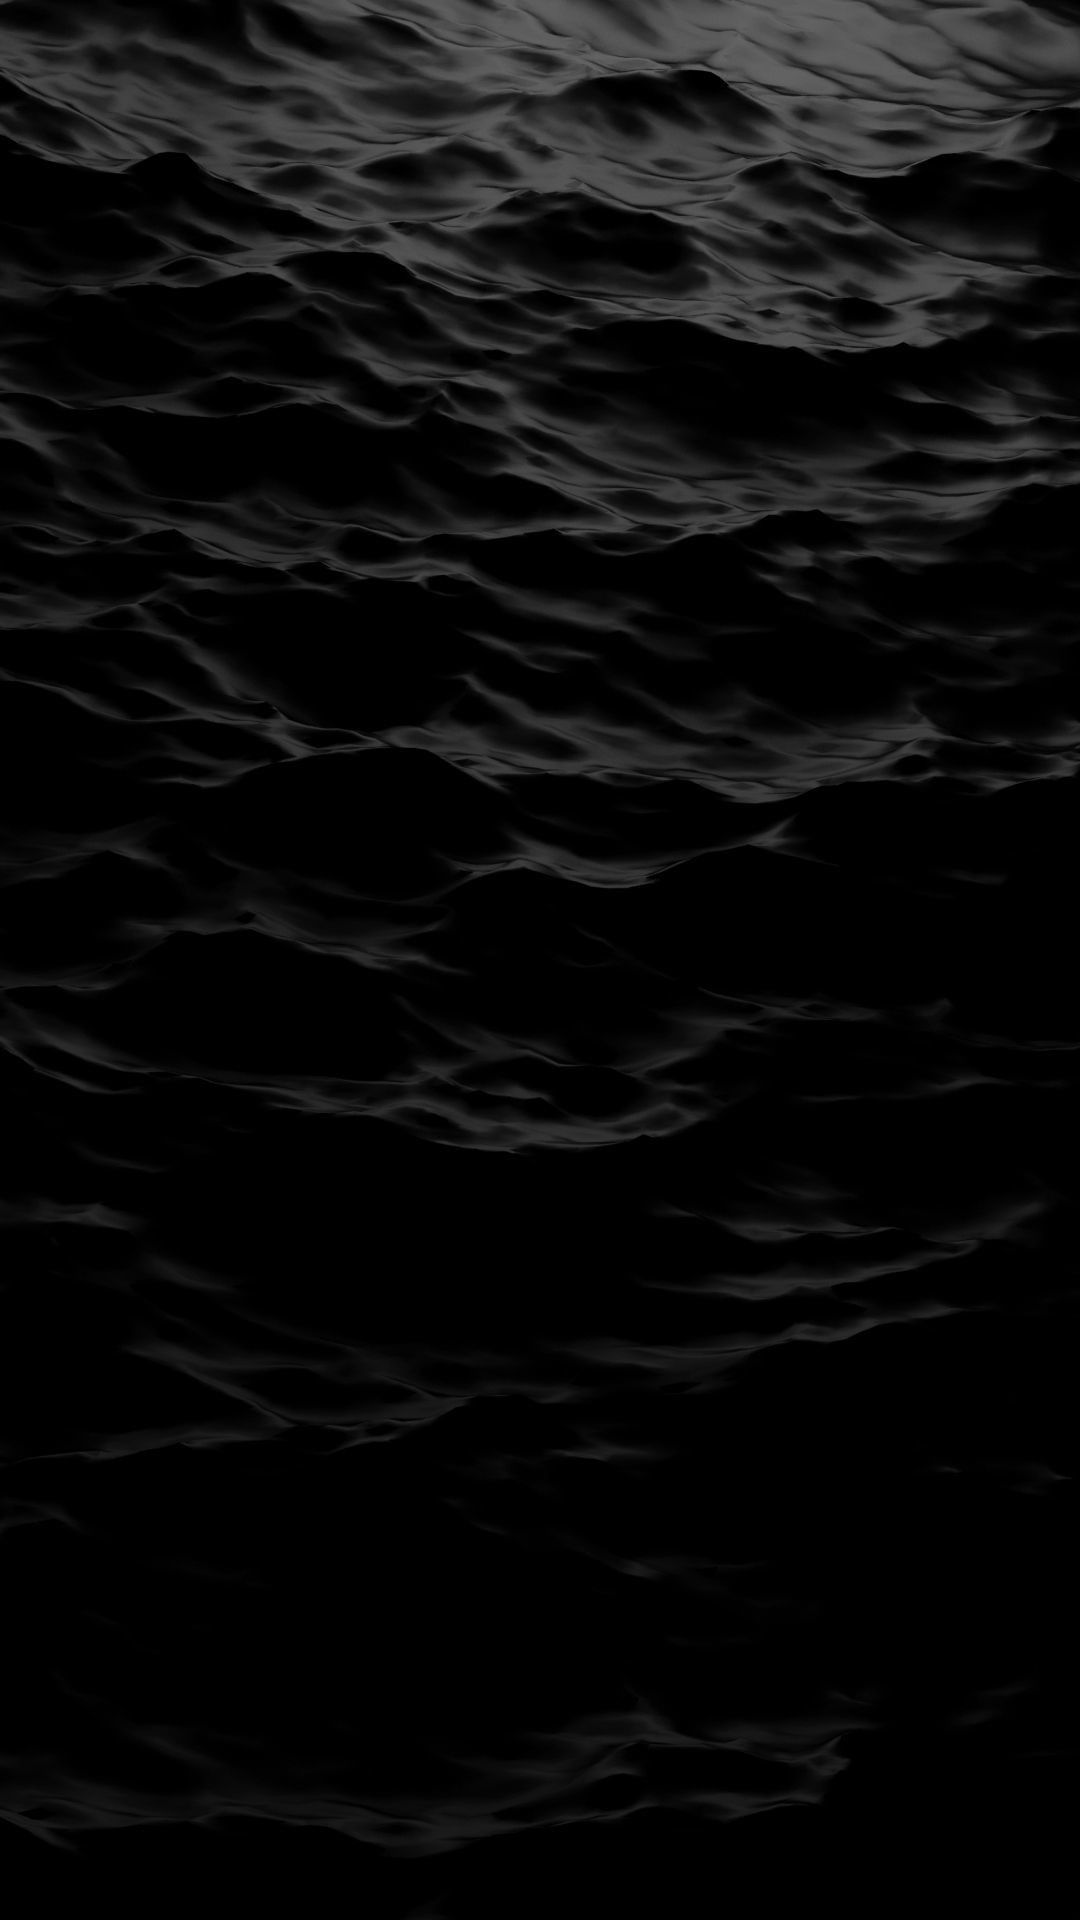 Gambar Glossy Black Android Wallpaper HD terbaru 2020. Wallpaper gelap, Wallpaper hitam, Wallpaper hitam dan putih